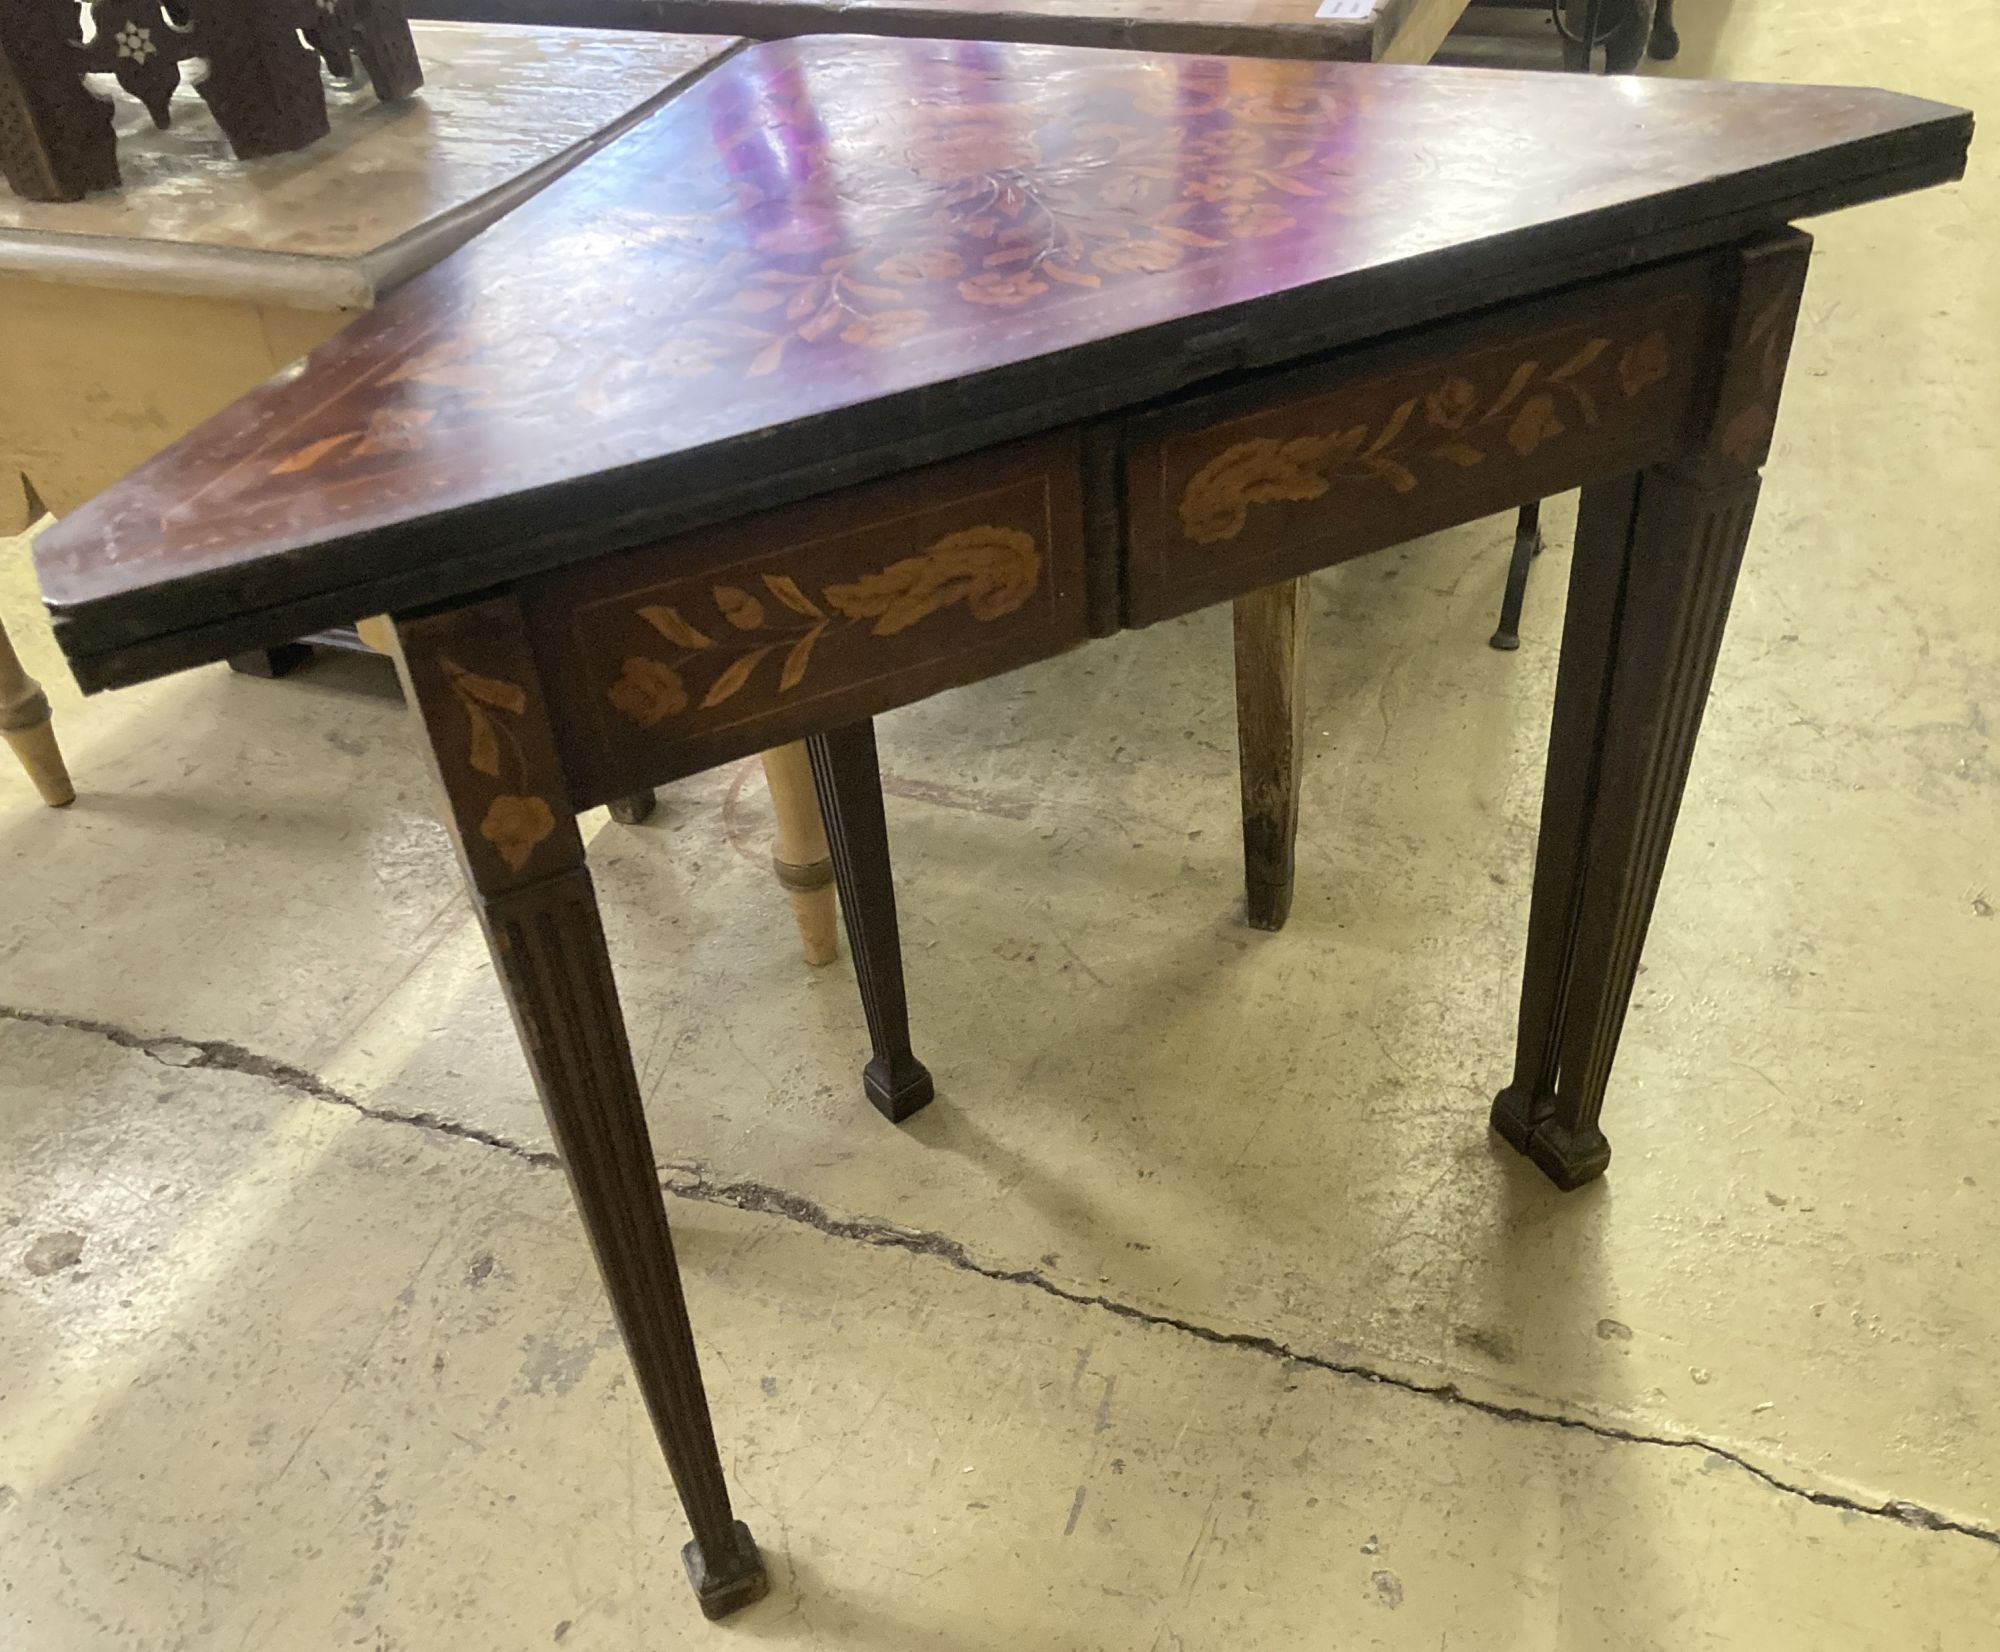 An early 19th century Dutch marquetry inlaid walnut triangular folding tea table, width 93cm, depth 51cm, height 76cm